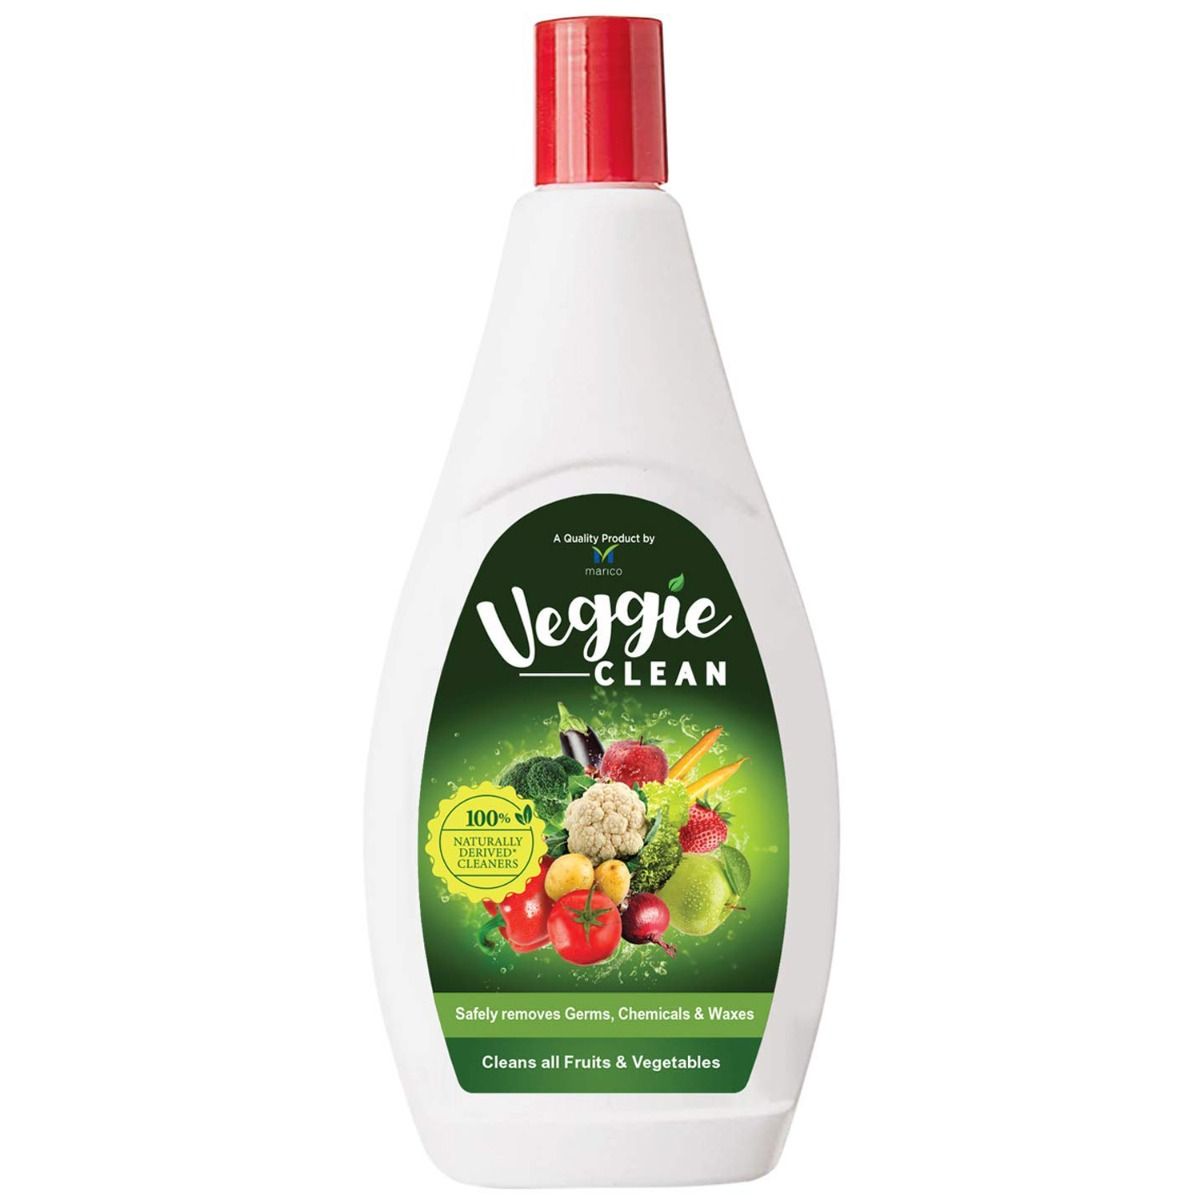 Marico Veggie Clean, 200 ml, Pack of 1 